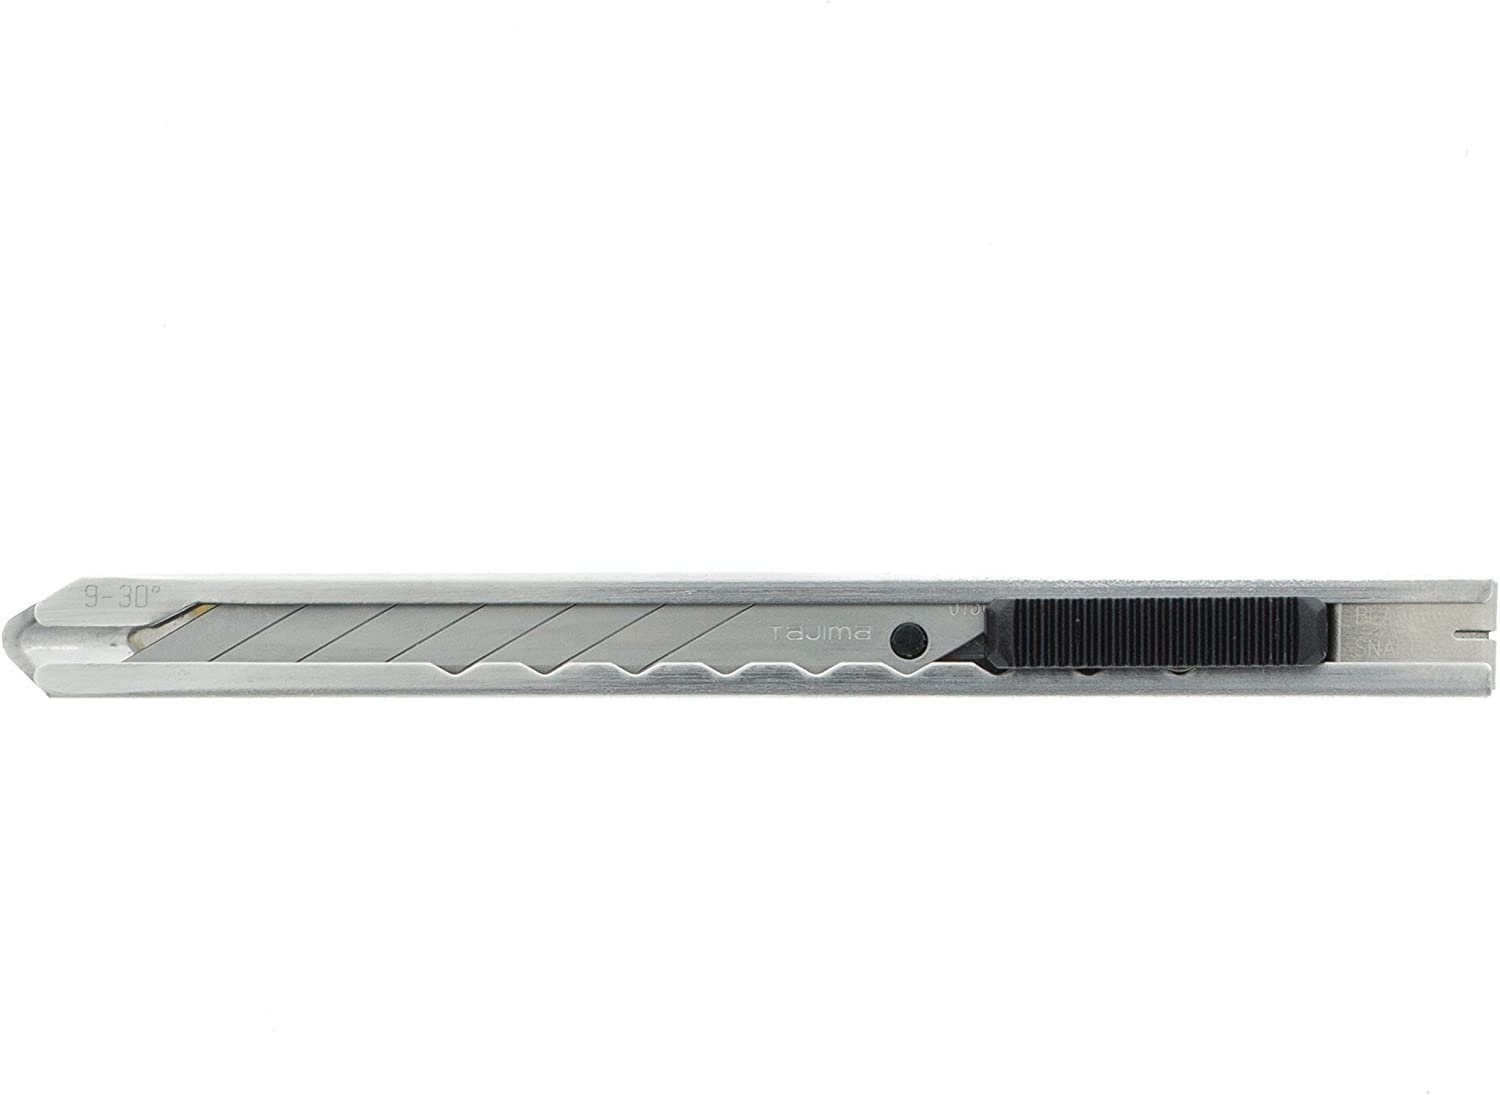 Tajima Cutter TAJIMA 9mm Cuttermesser LC390, Edelstahl mit 30°-Klinge, TAJ-18977